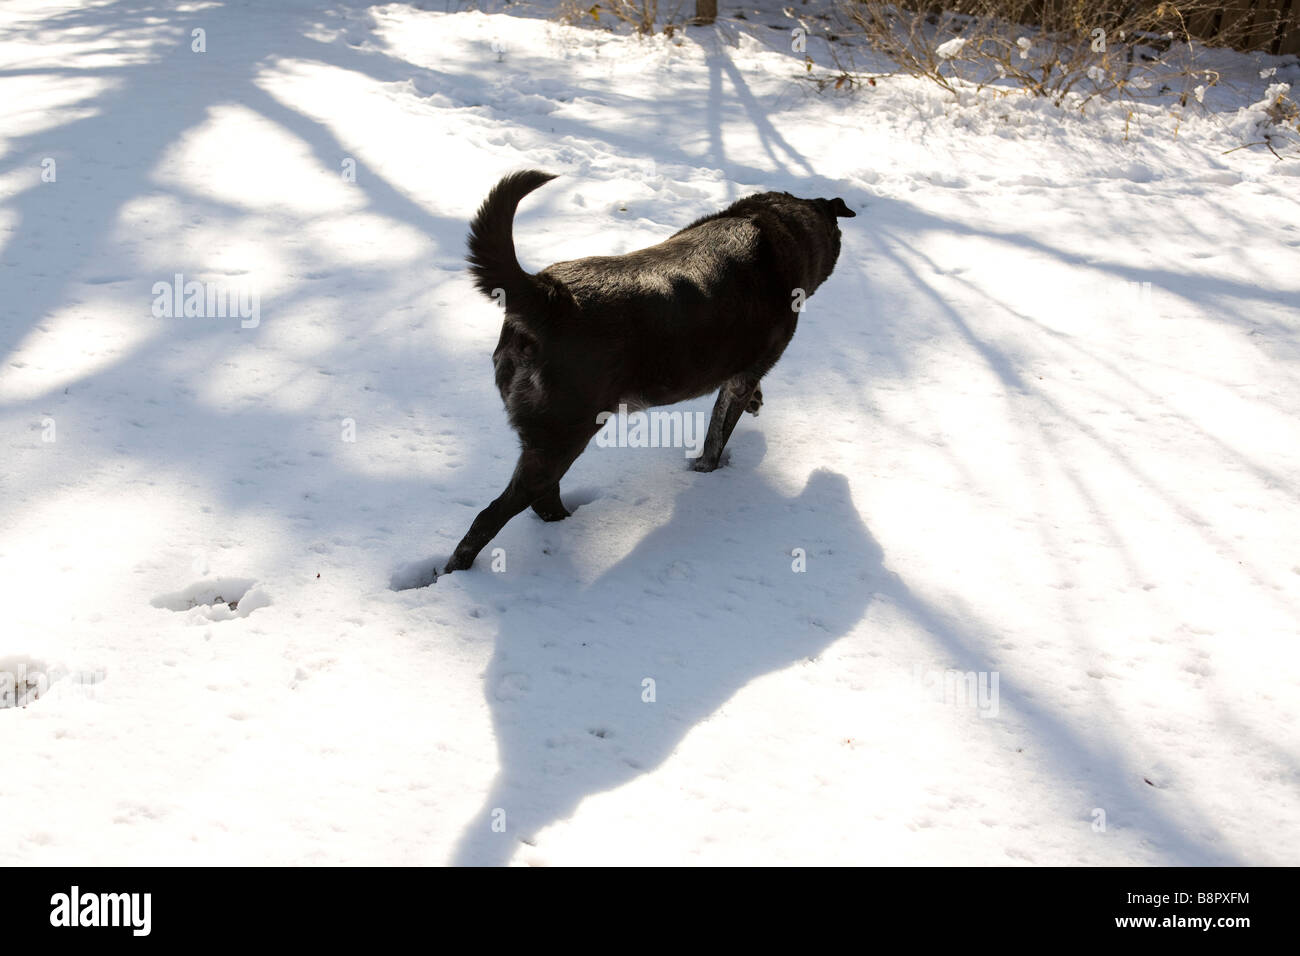 Promenade de chien noir sur la neige Banque D'Images